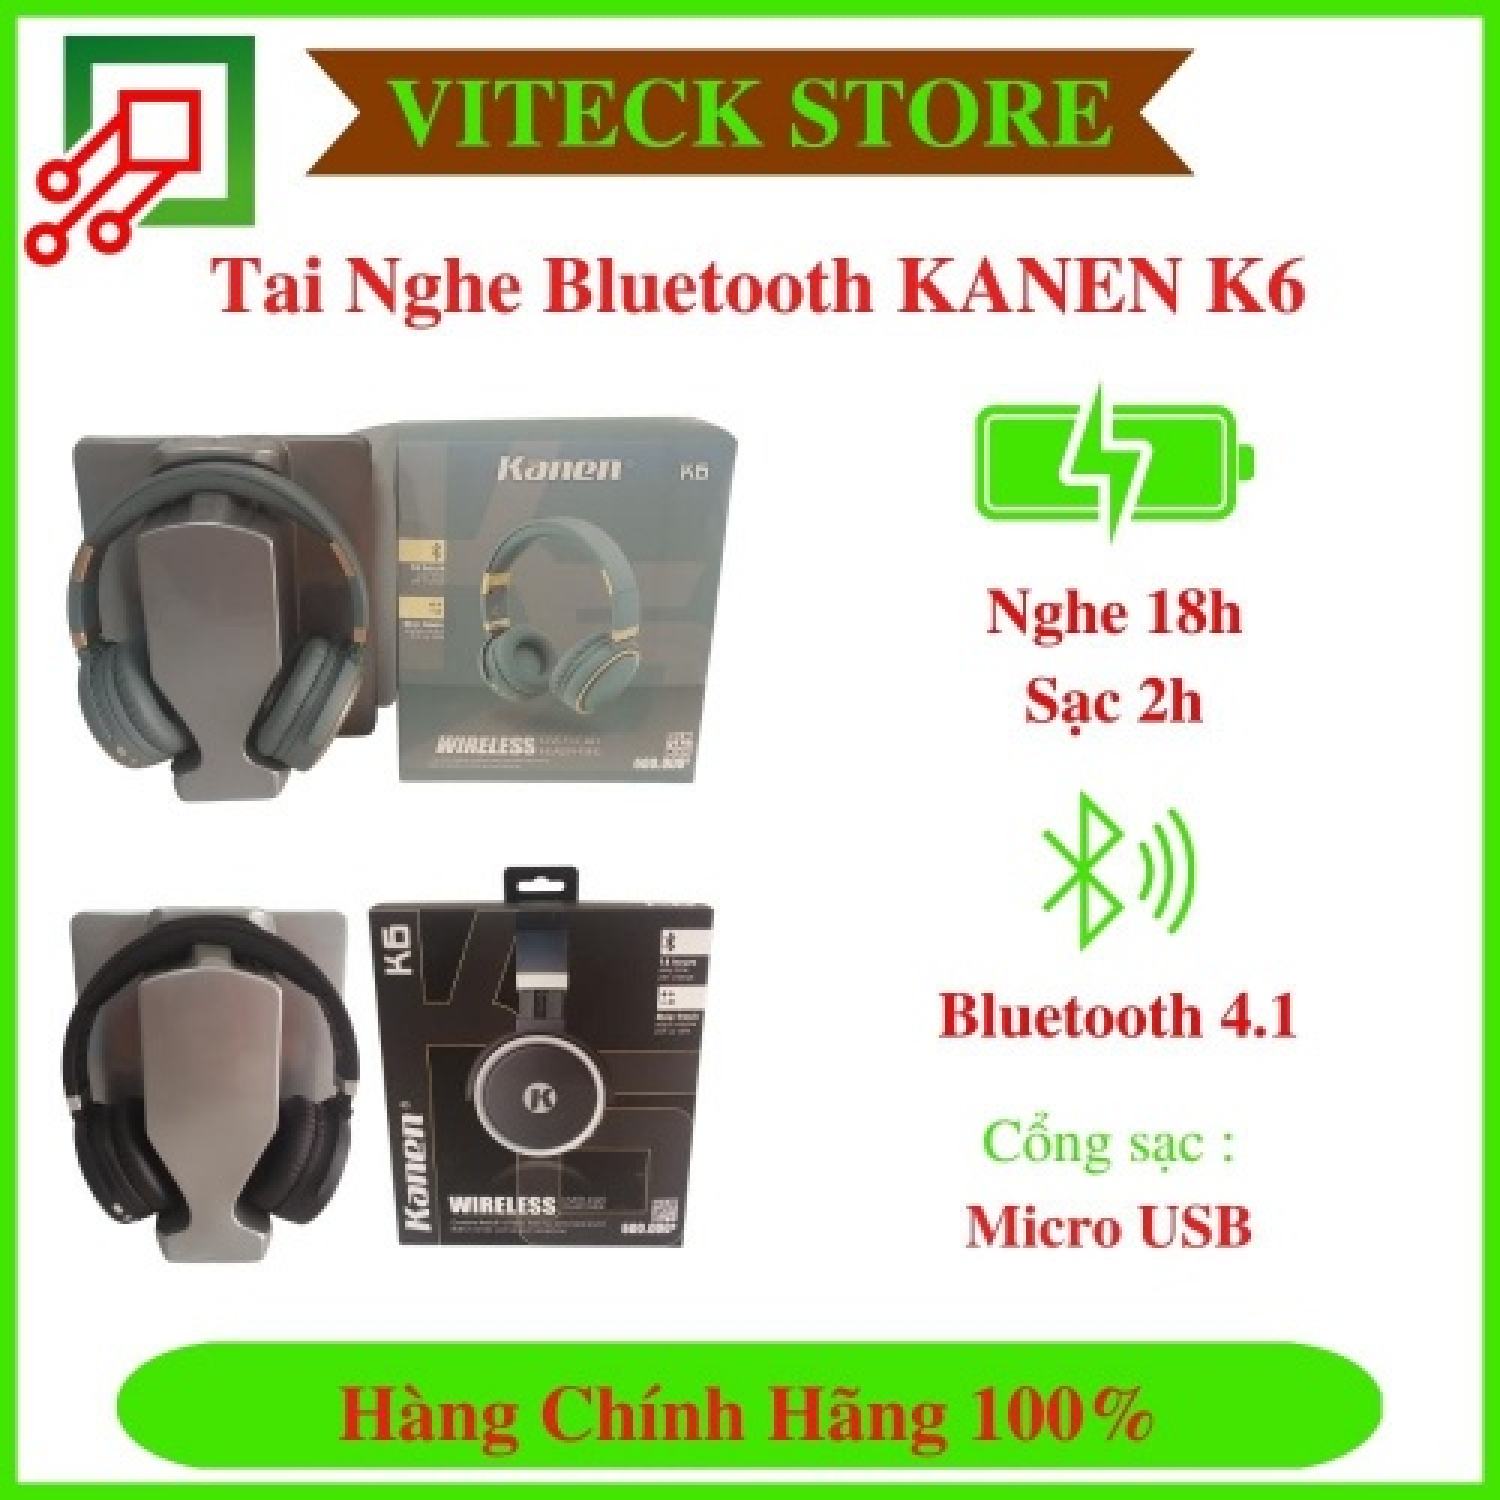 Tai Nghe Bluetooth Kanen K6 - Thời gian nghe lên đến 18h - Bluetooth 4.1